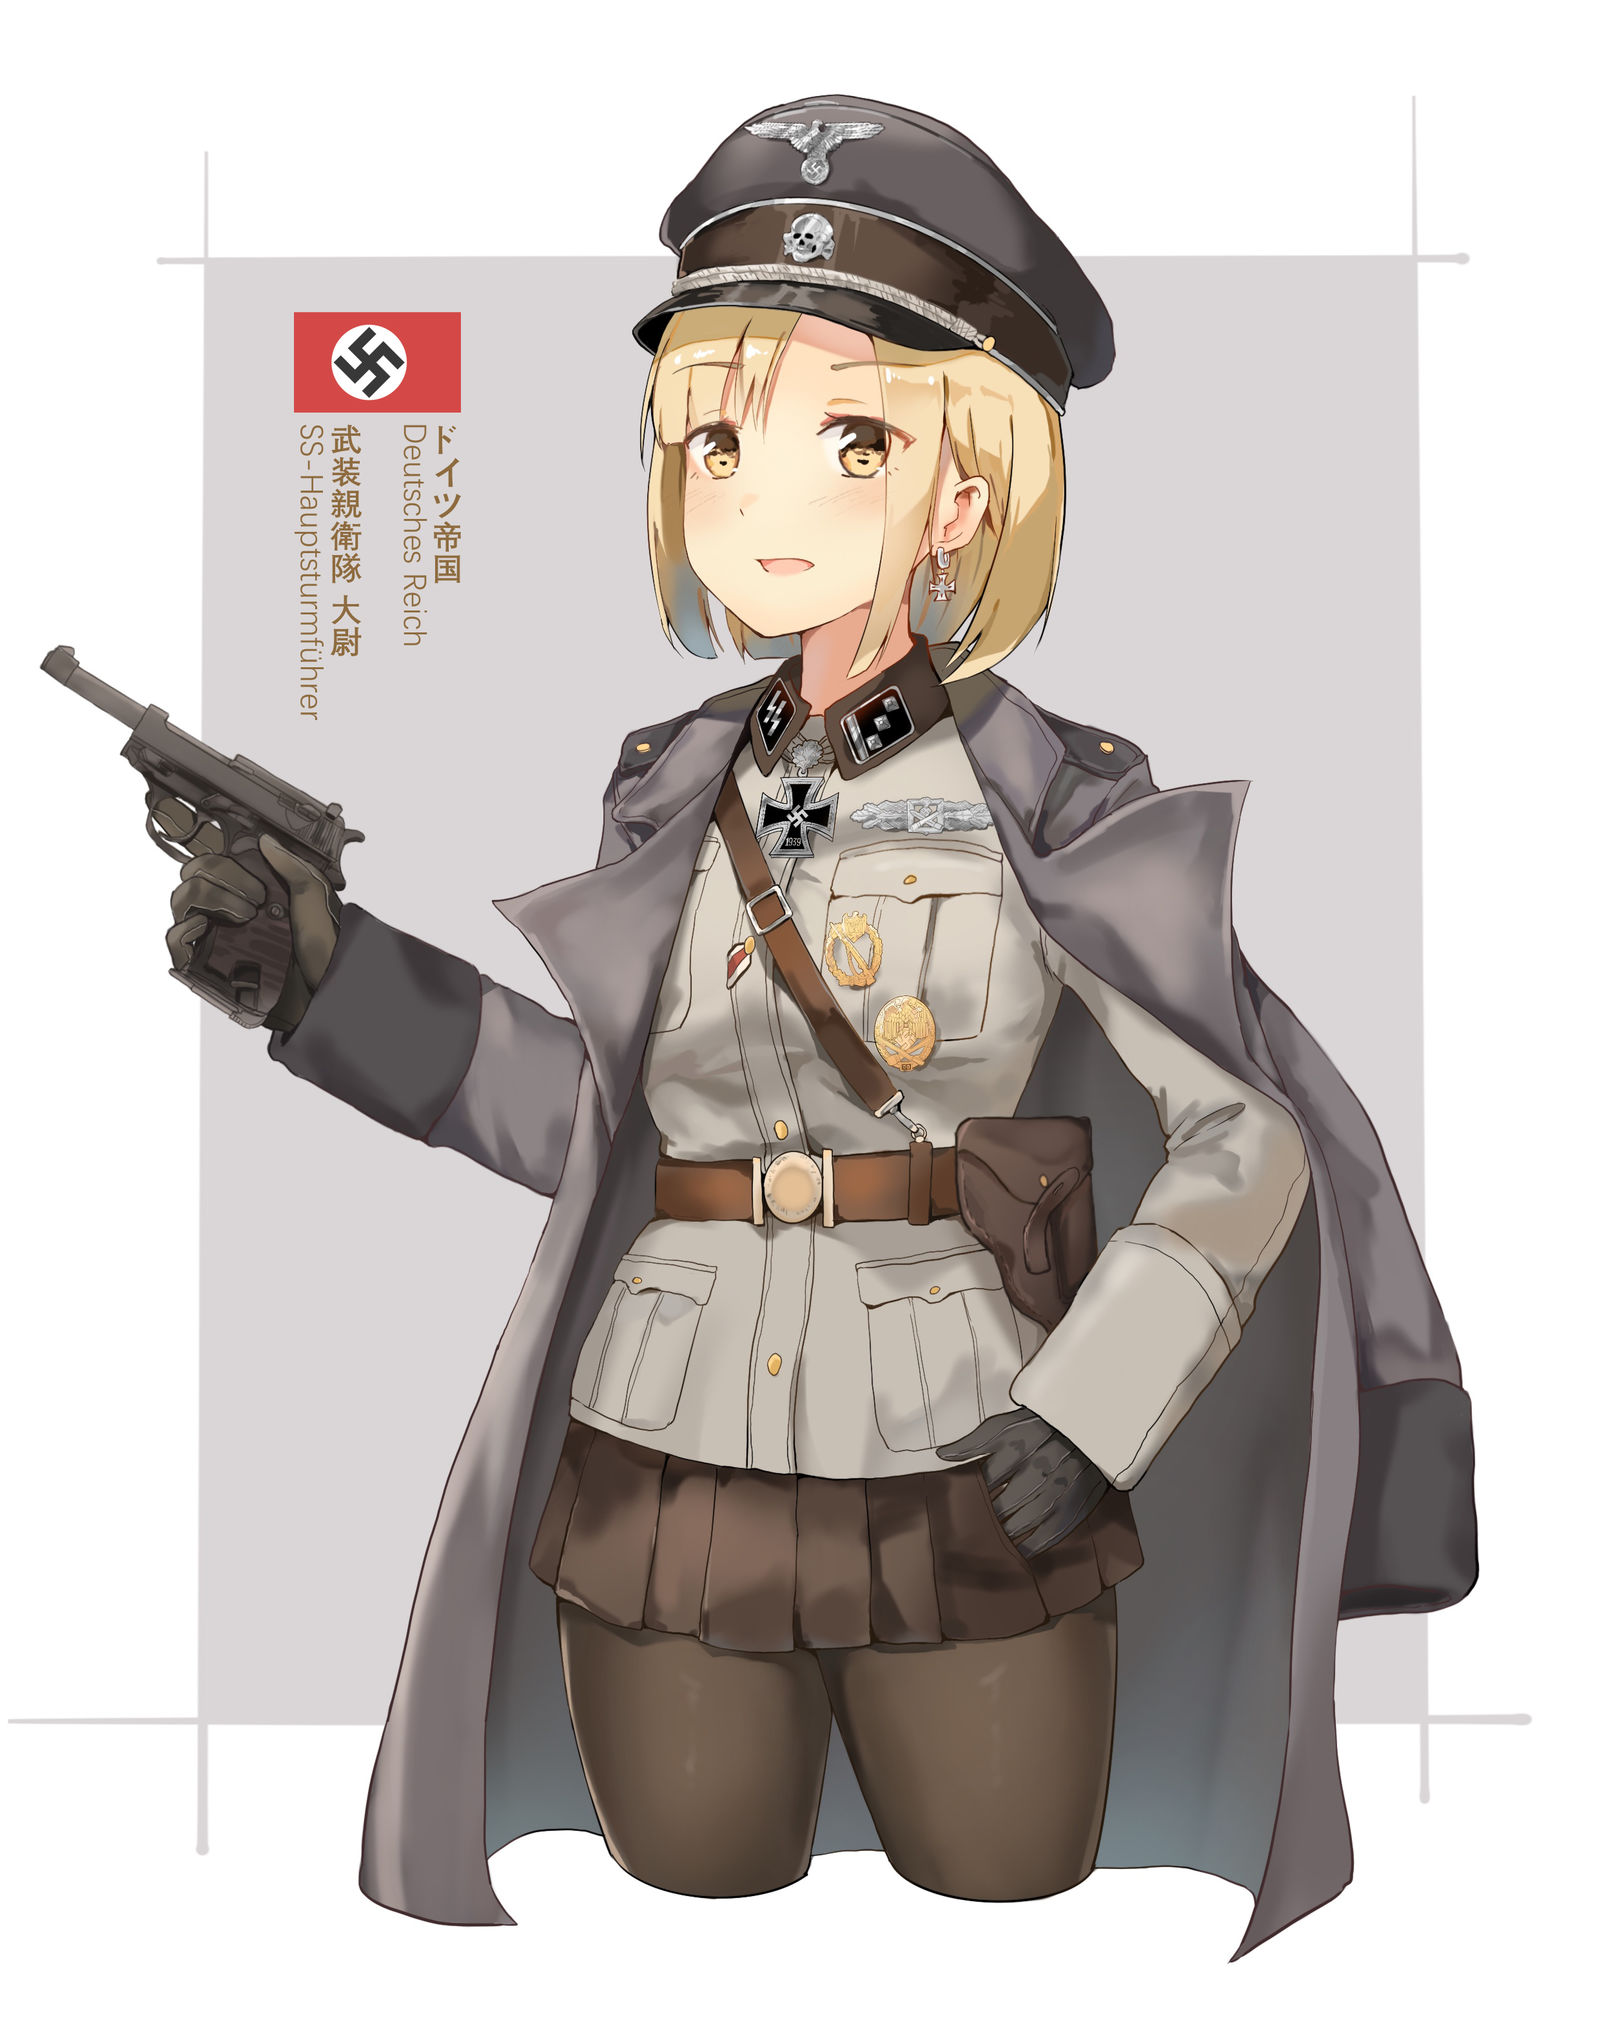 SS-Hauptsturmführer